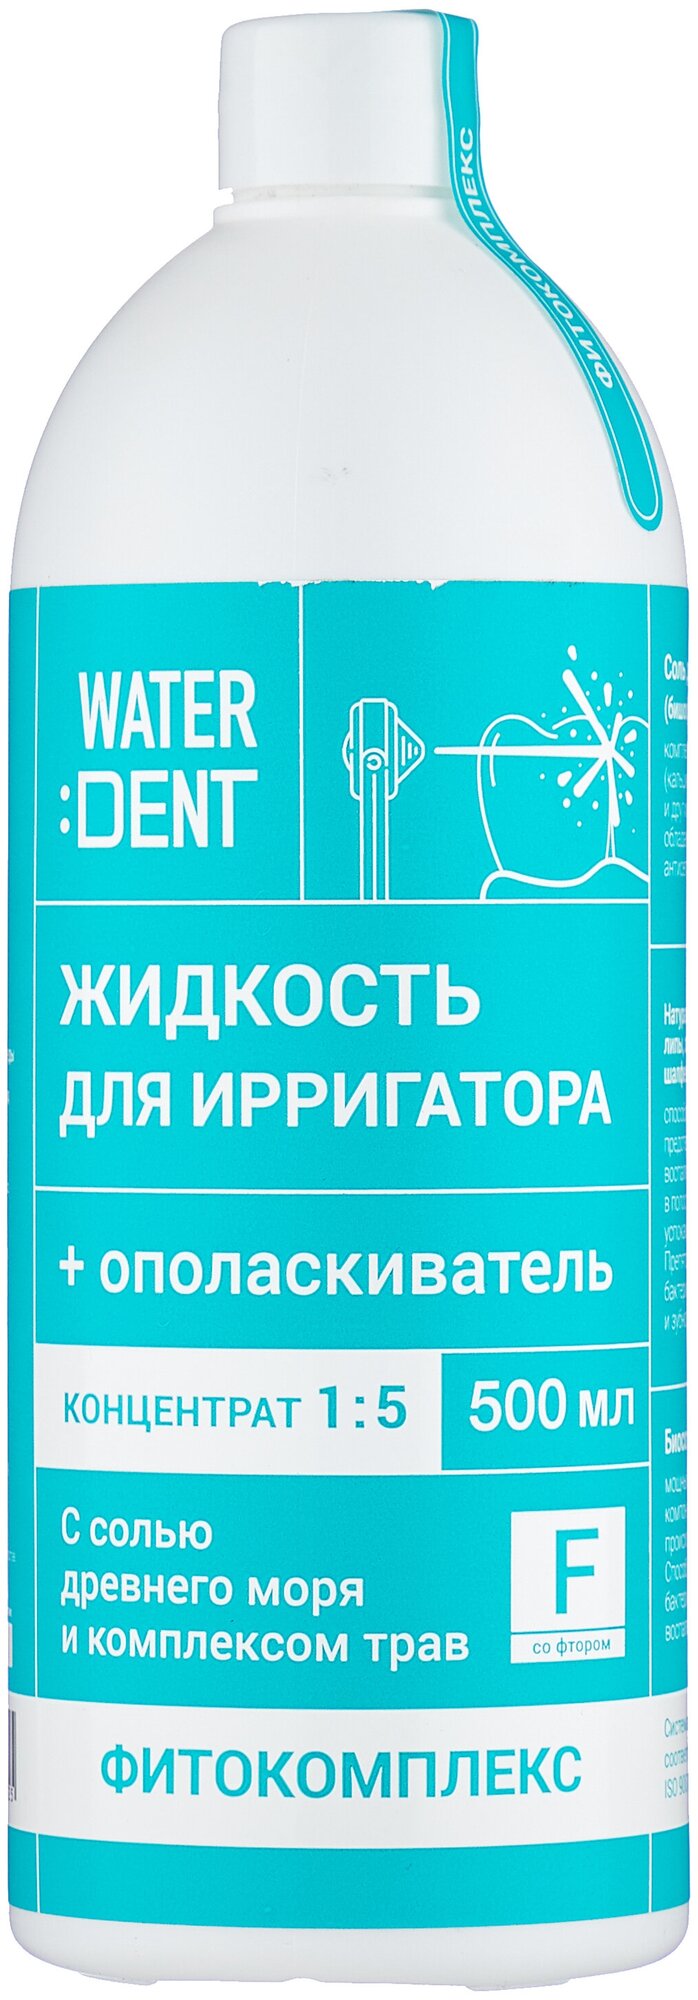 Waterdent Ополаскиватель Фитокомплекс со фтором + жидкость для ирригатора